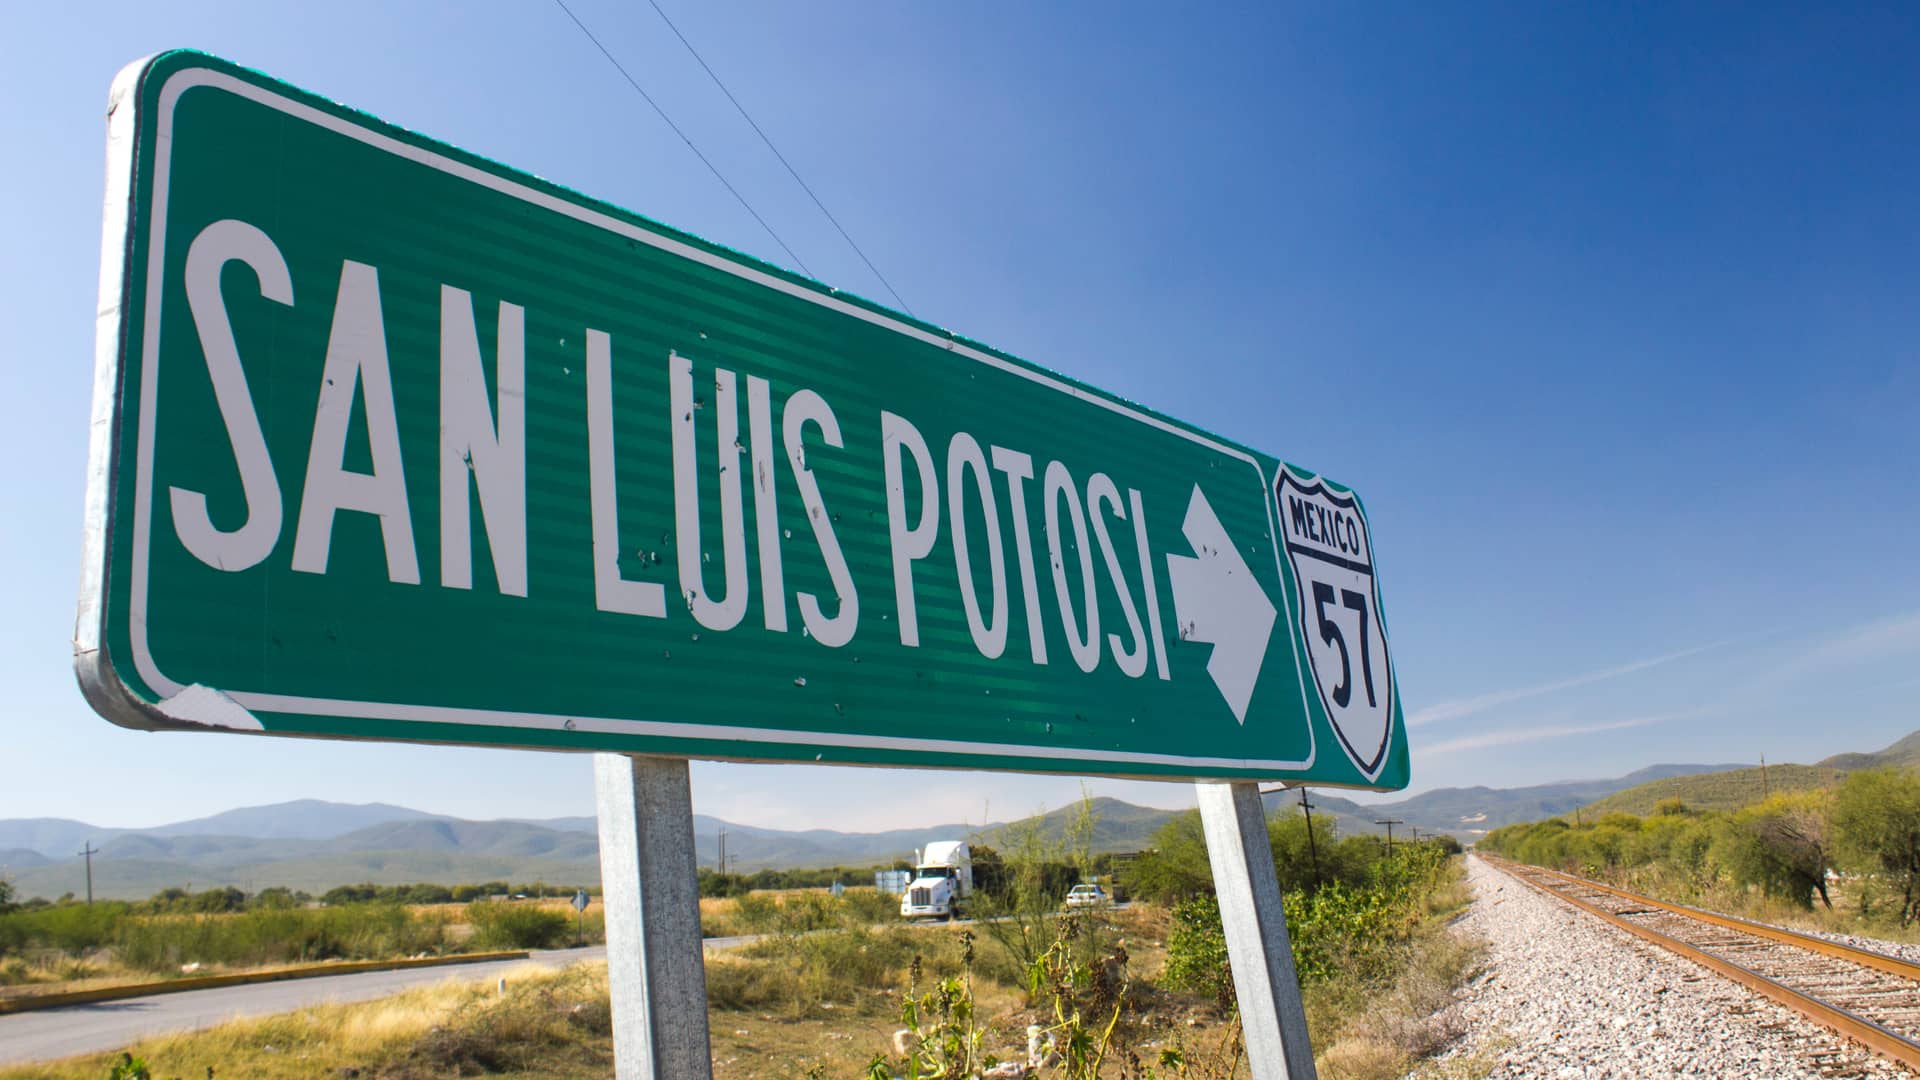 ¿Qué hace que un internet en San Luis de Potosí sea mejor que otro?